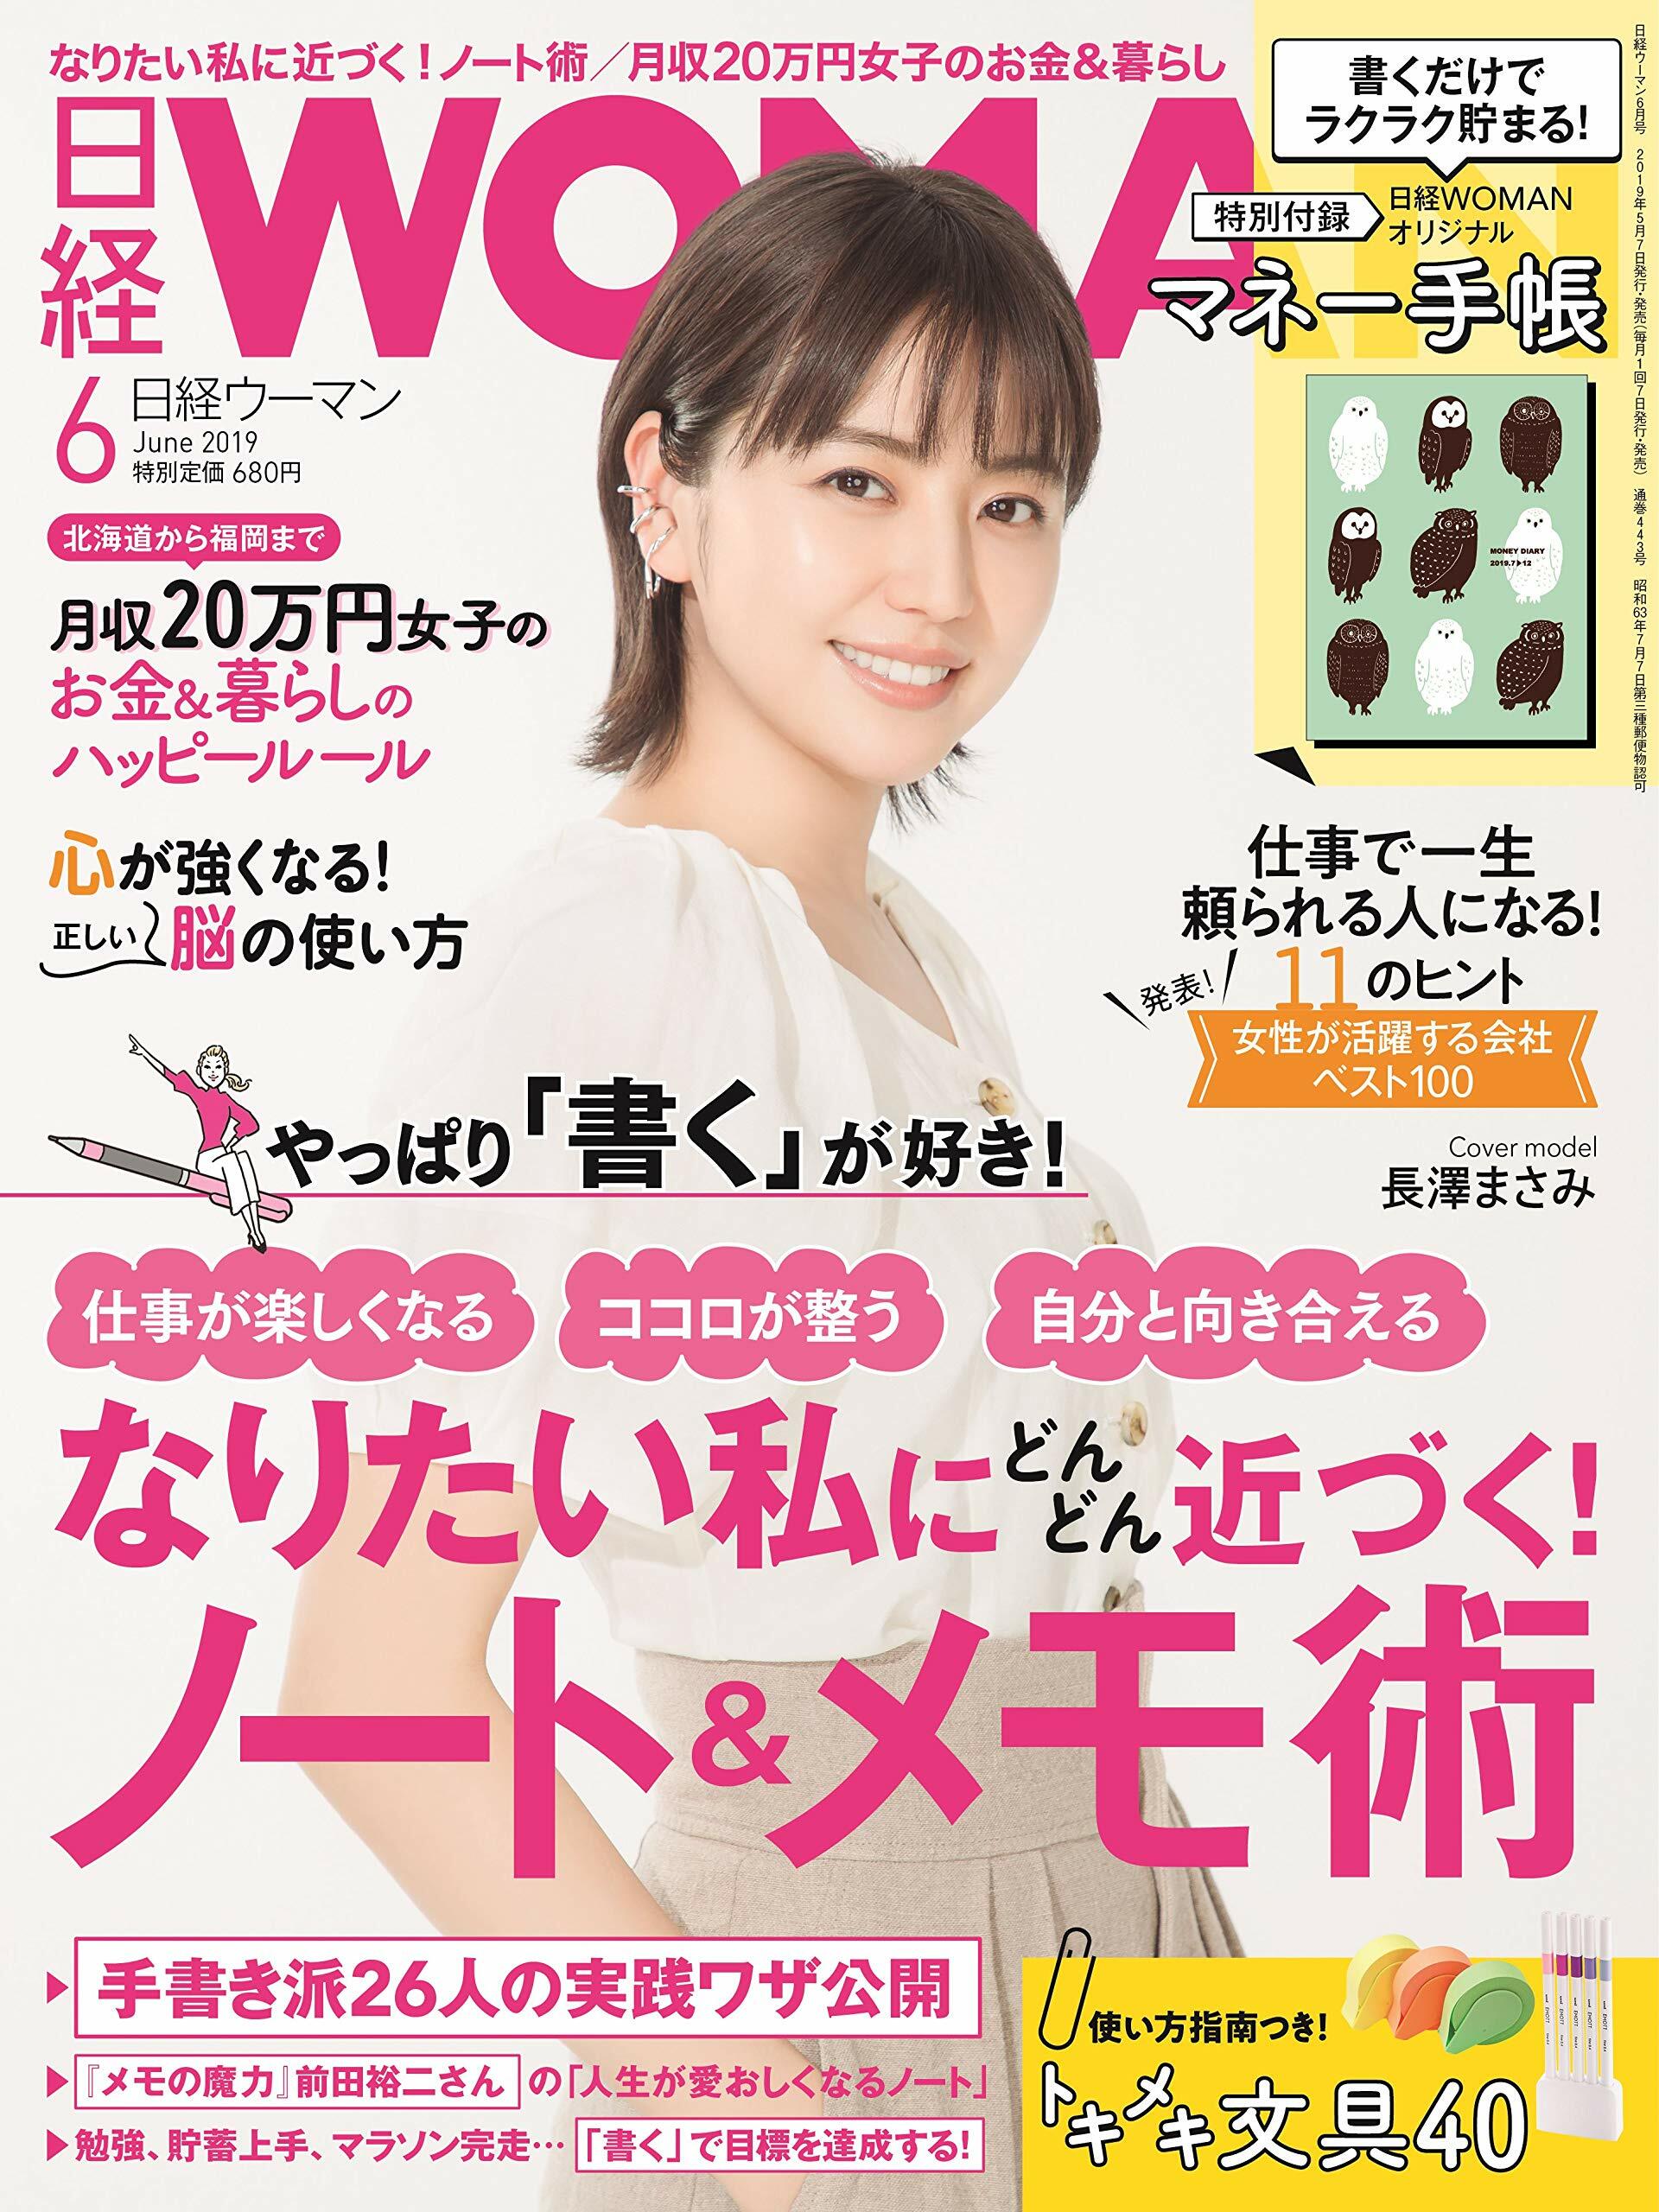 日經Woman 2019年 6月號